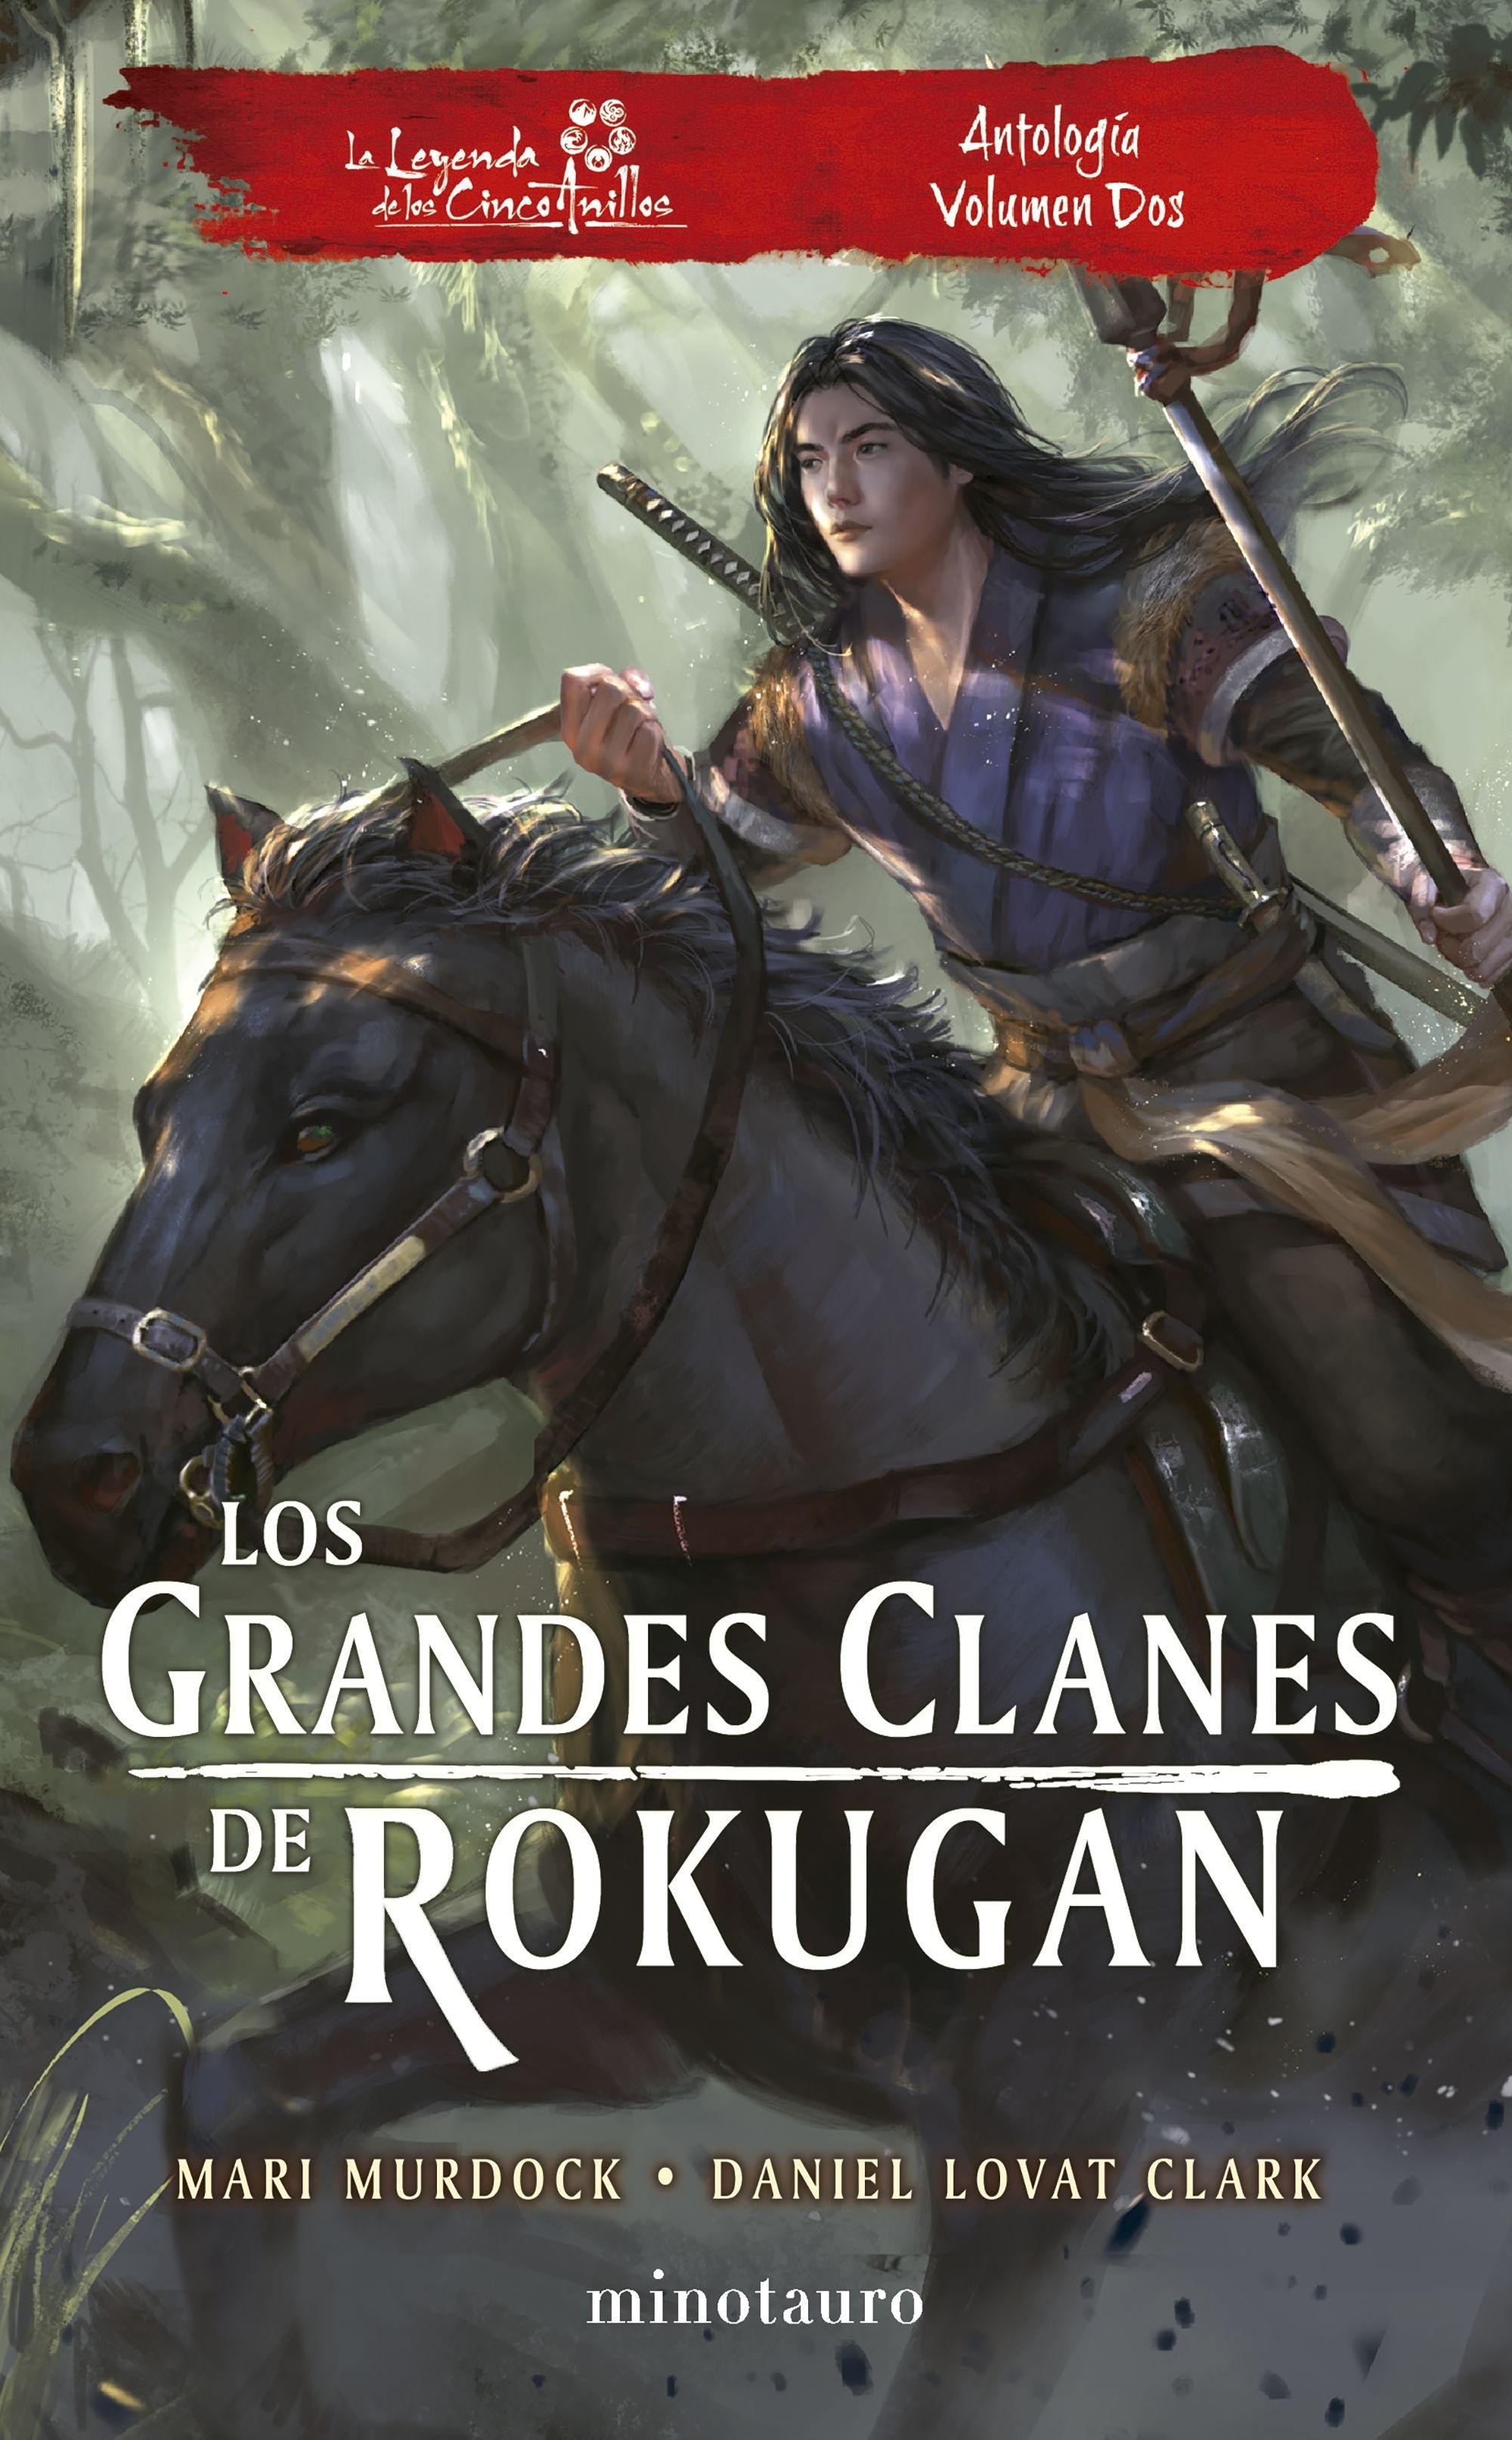 Los grandes clanes de Rokugan. Antología volumen dos